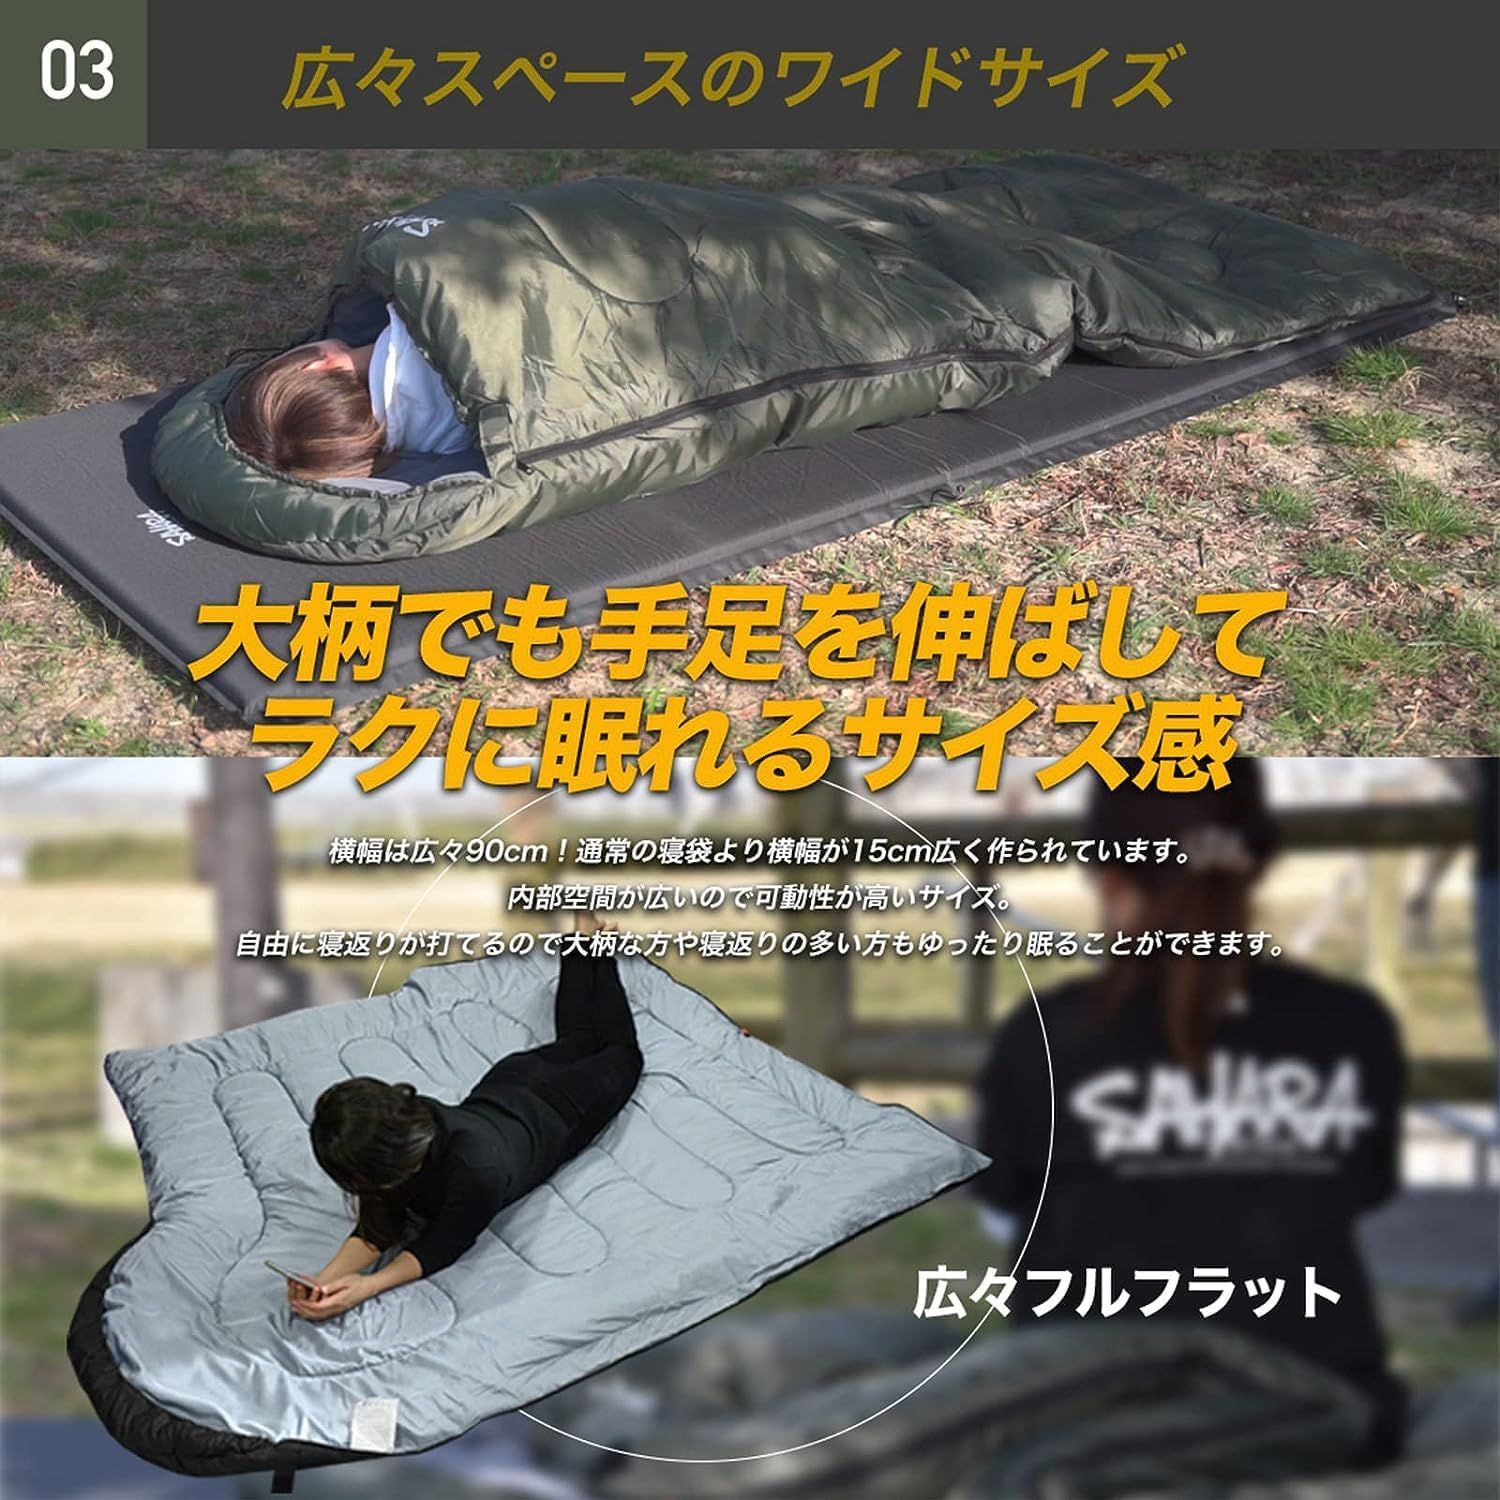 2個 高級素材 寝袋 シュラフ ワイドサイズ 枕付き 人工ダウン  -15℃対応シュラフ